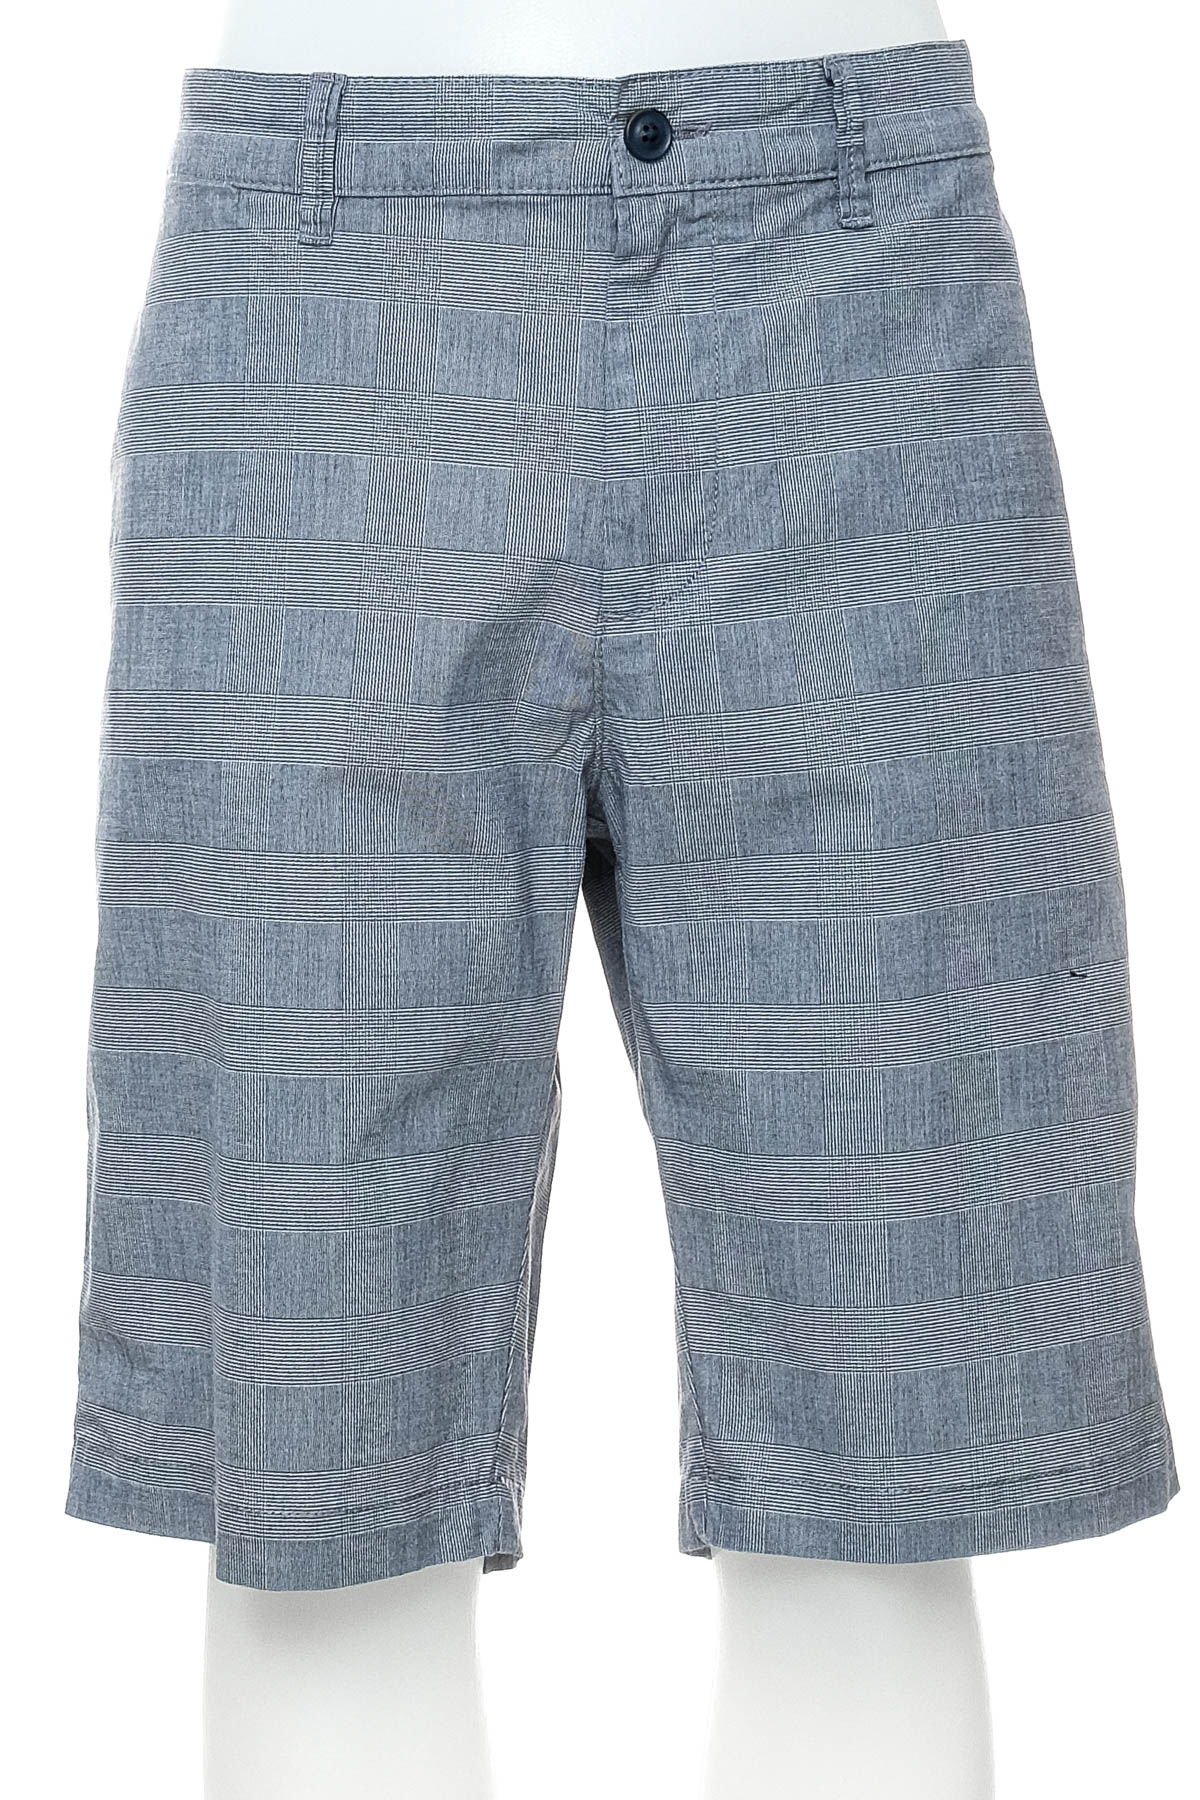 Pantaloni scurți bărbați - Bexleys - 0